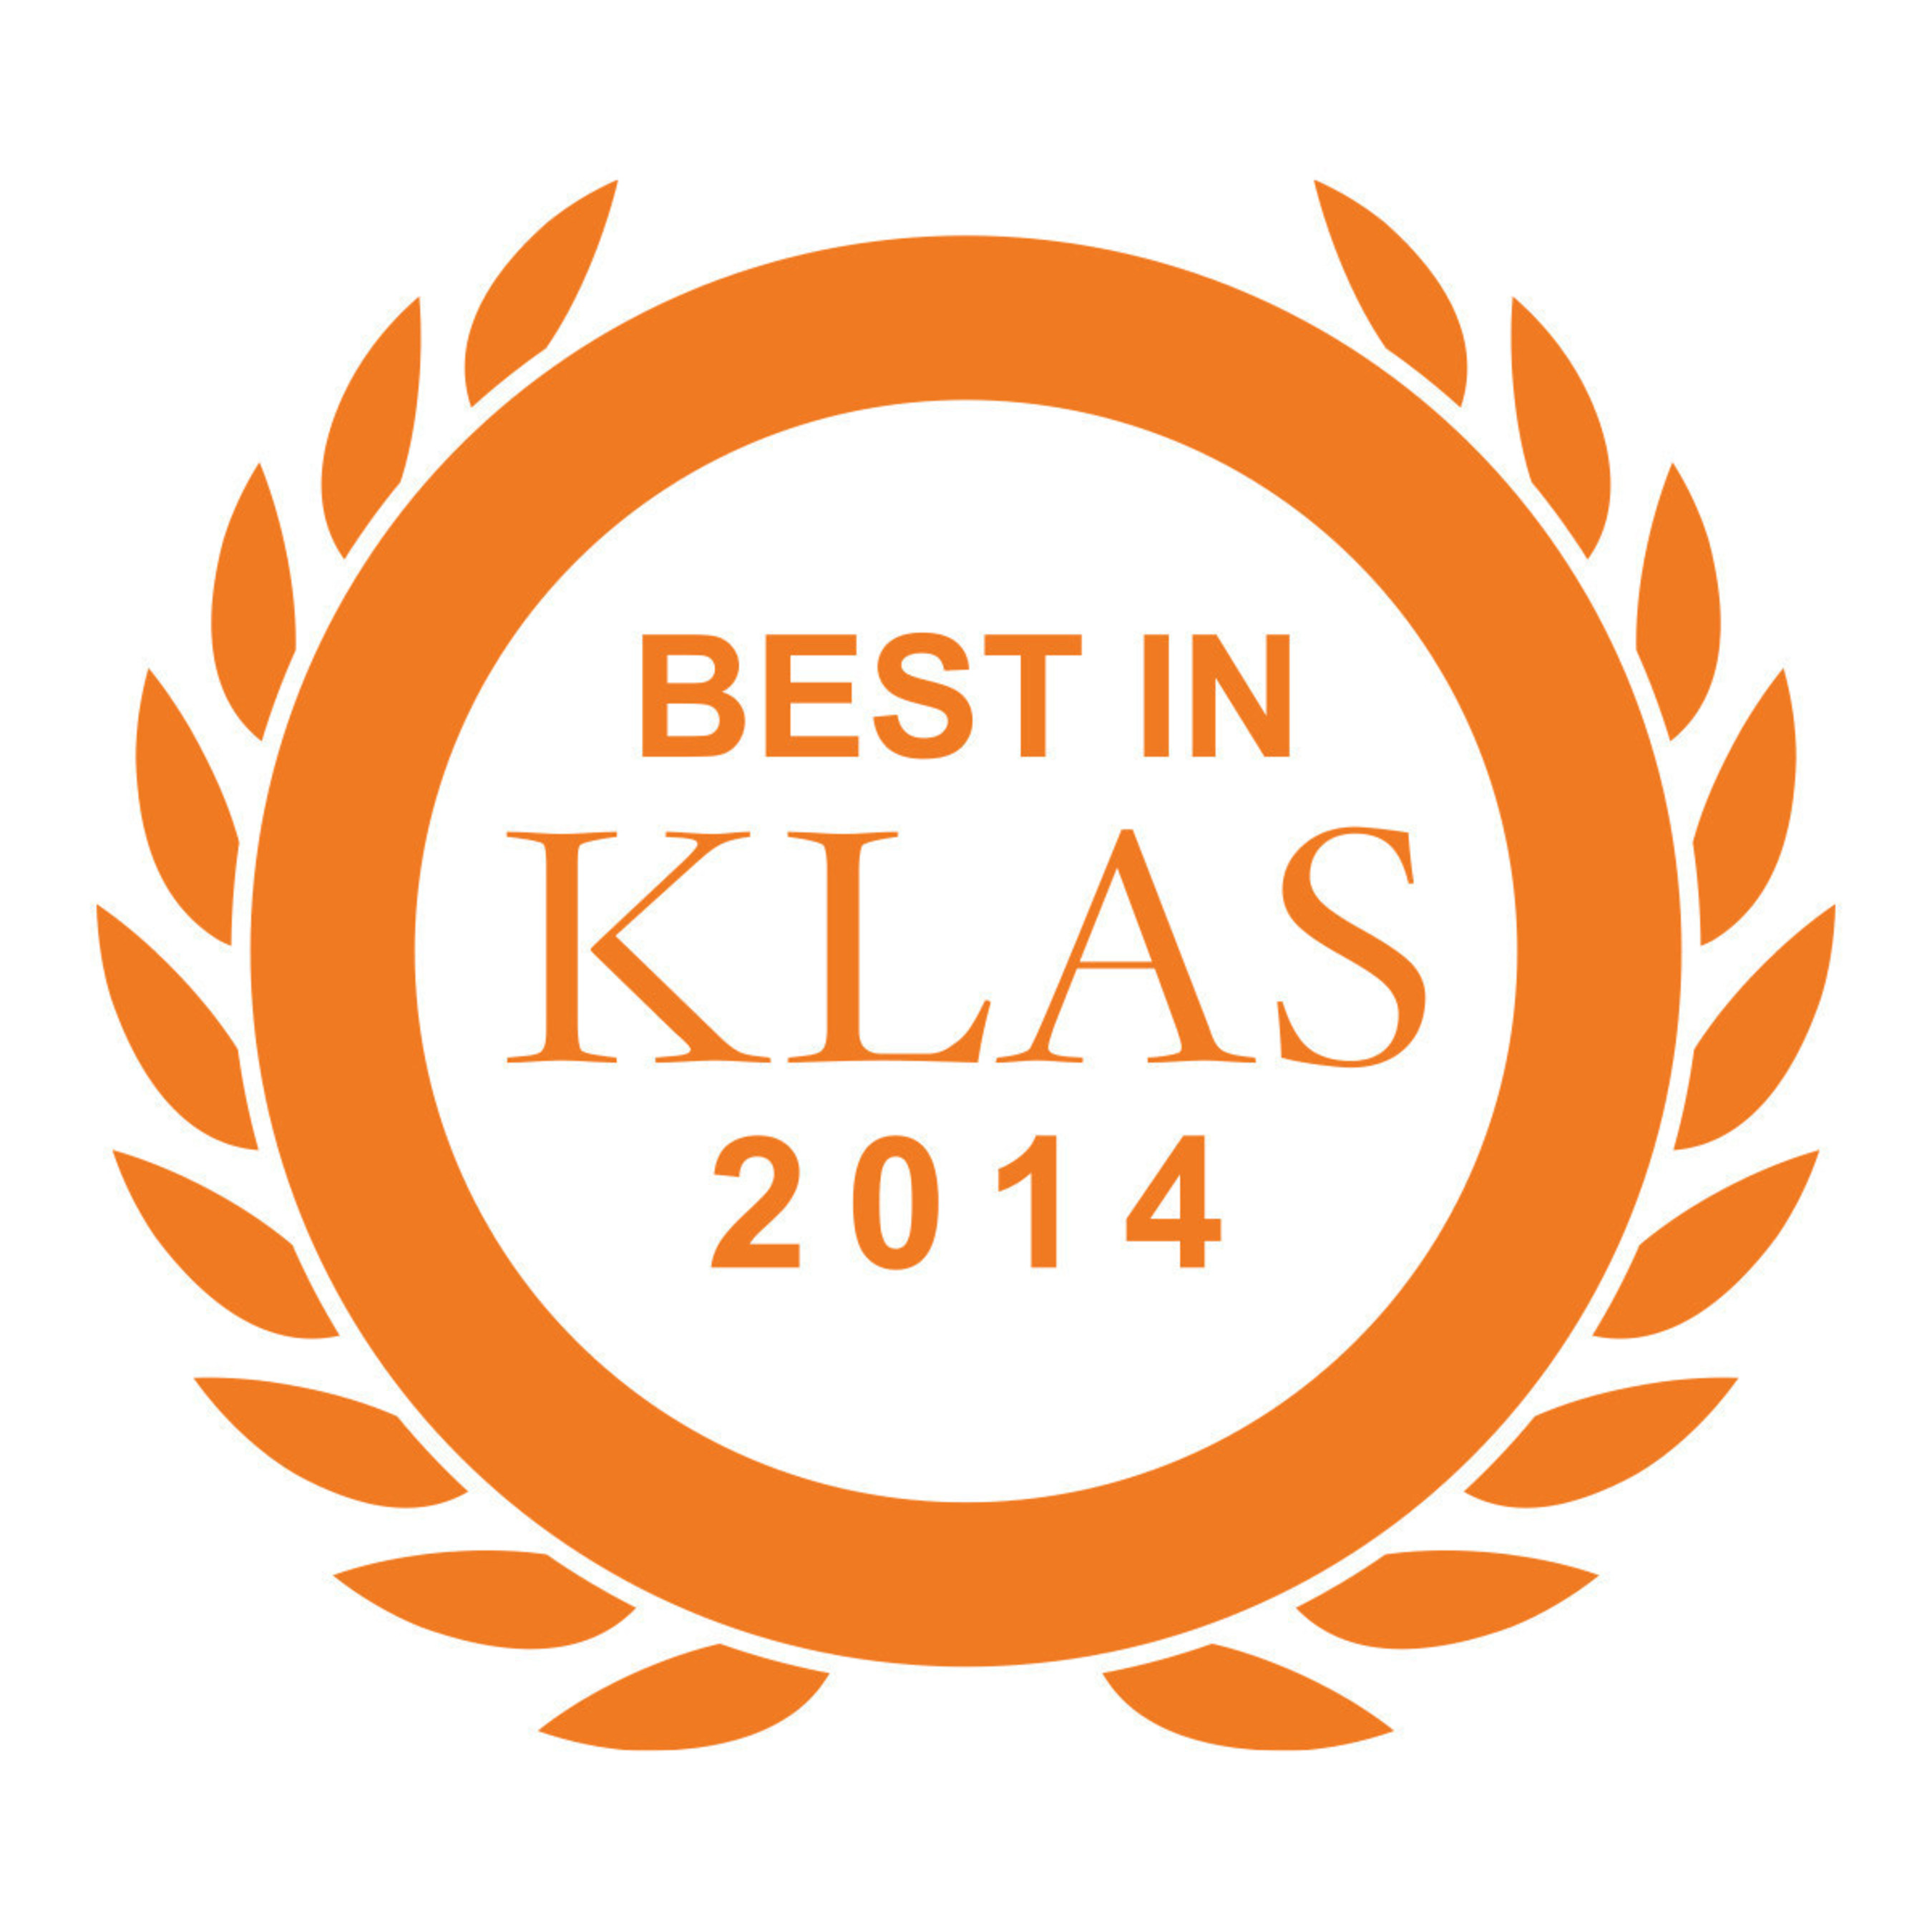 Best in KLAS 2014 logo